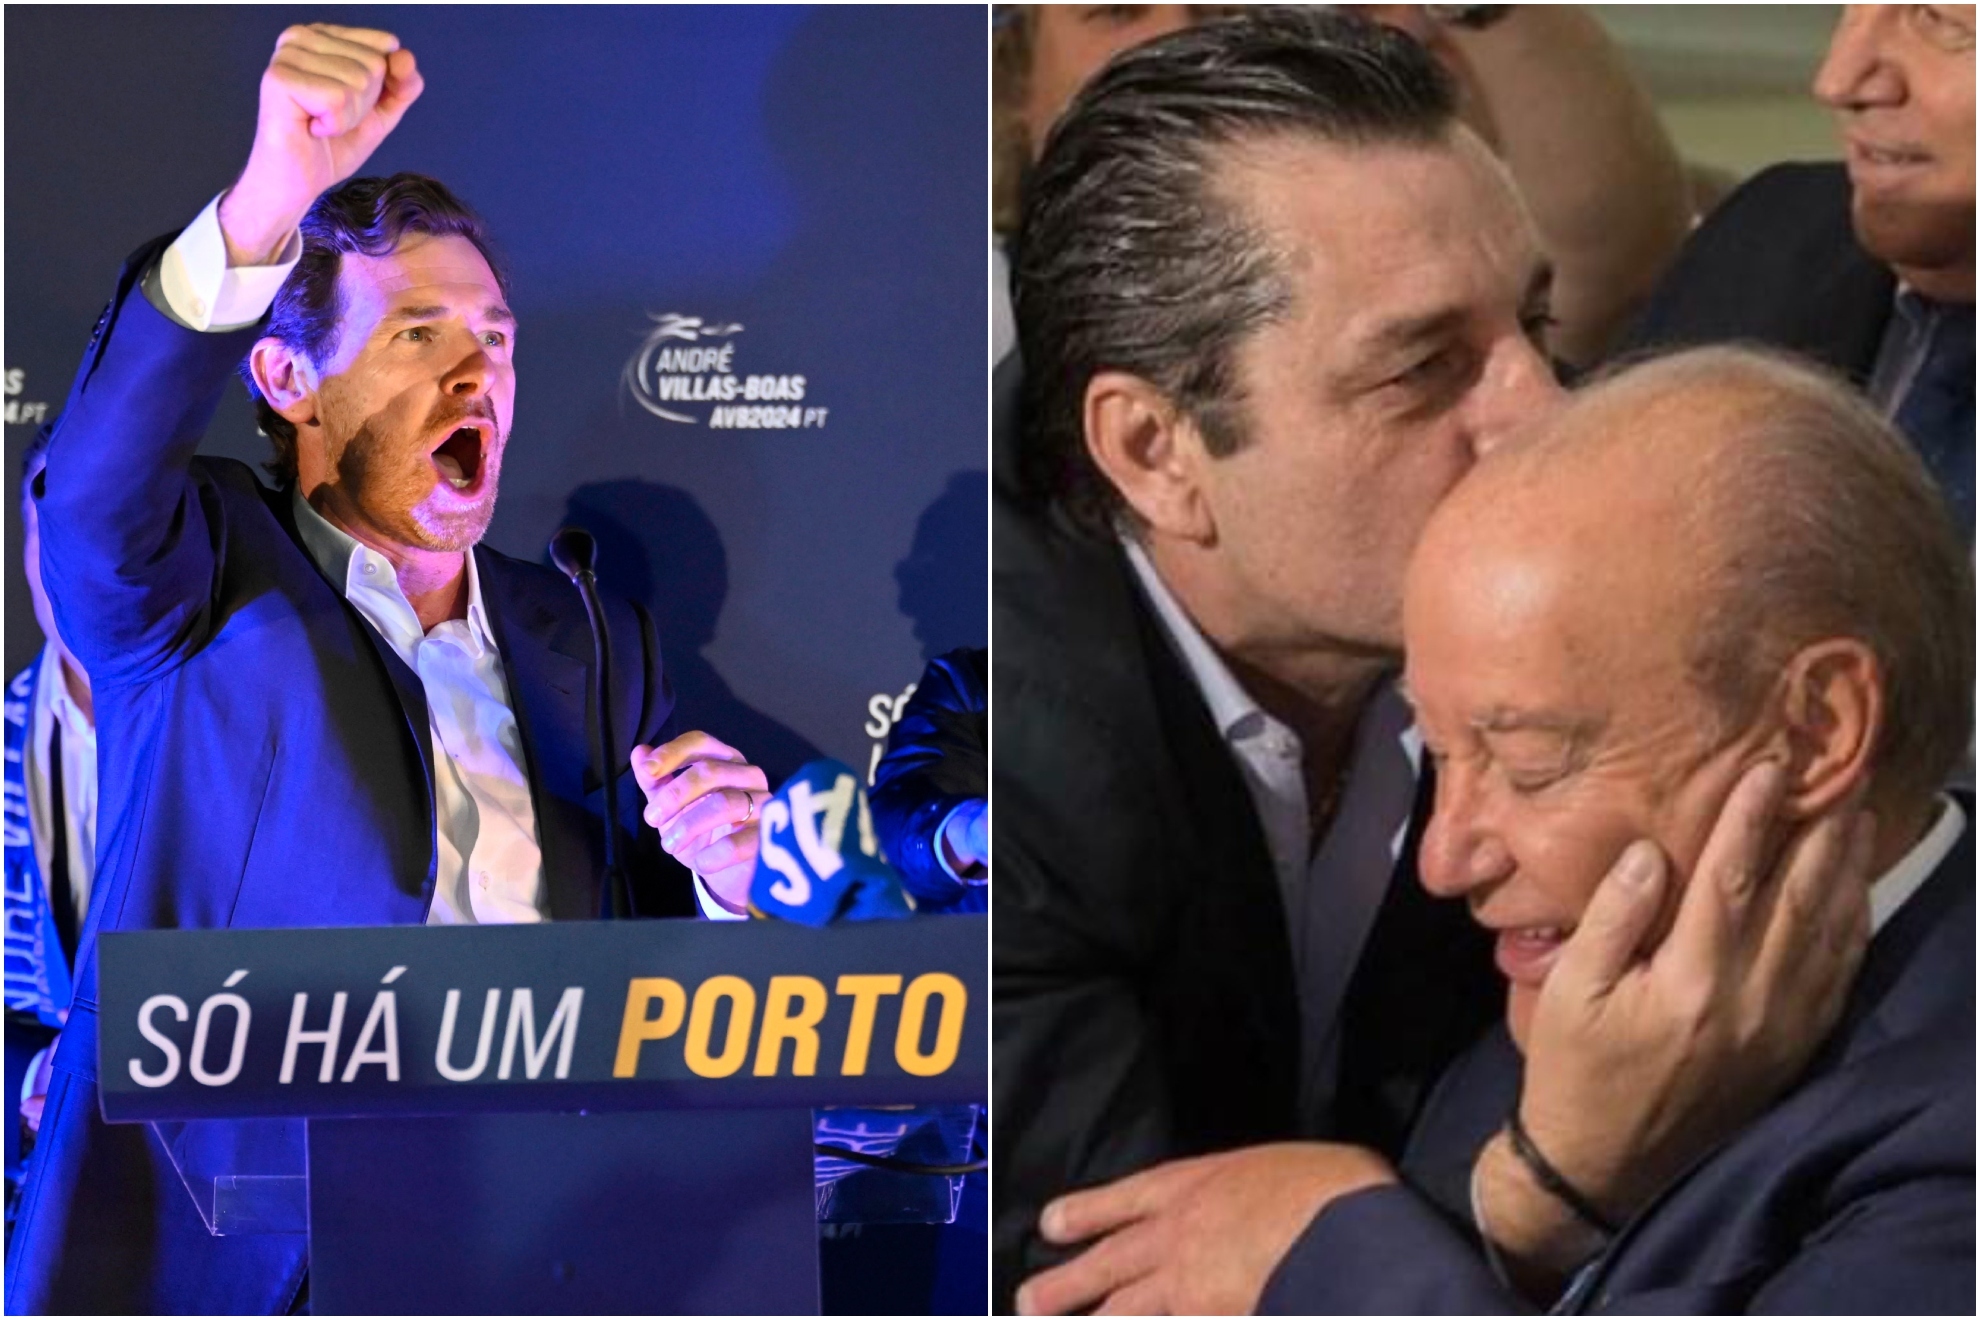 A la izquierda, Villas-Boas celebra la victoria en las elecciones. A la derecha, Futre besa a Pinto da Costa.